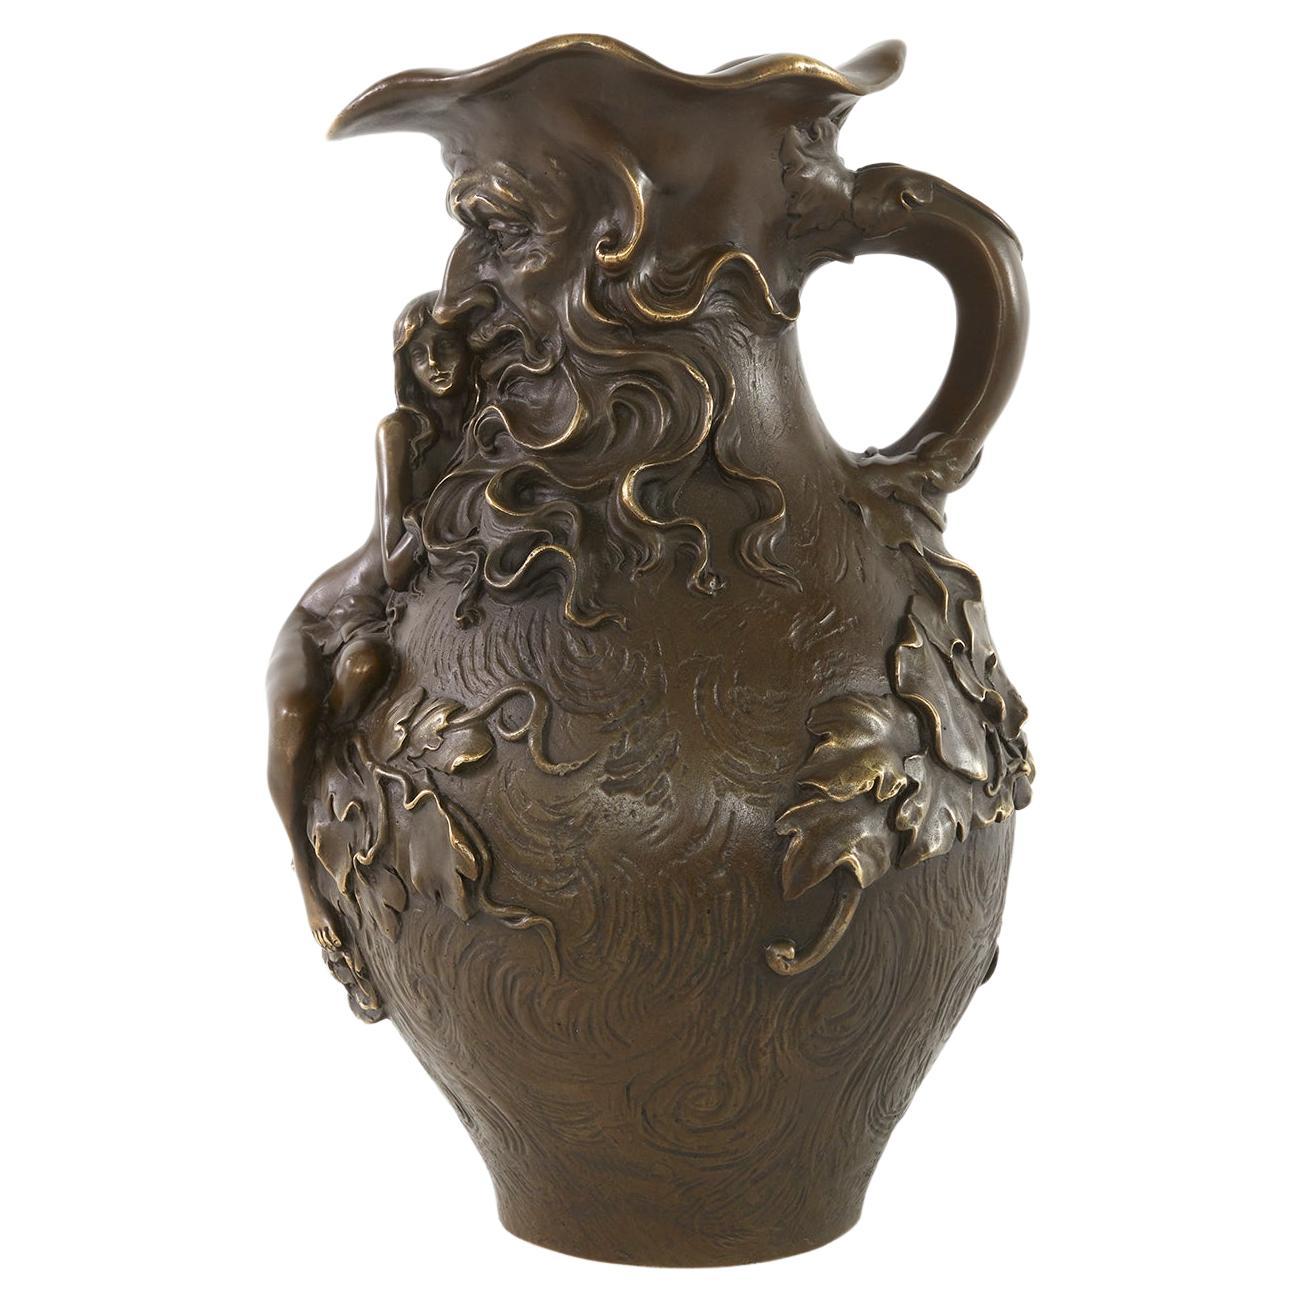 Superbe pièce/vase en bronze de style Art nouveau